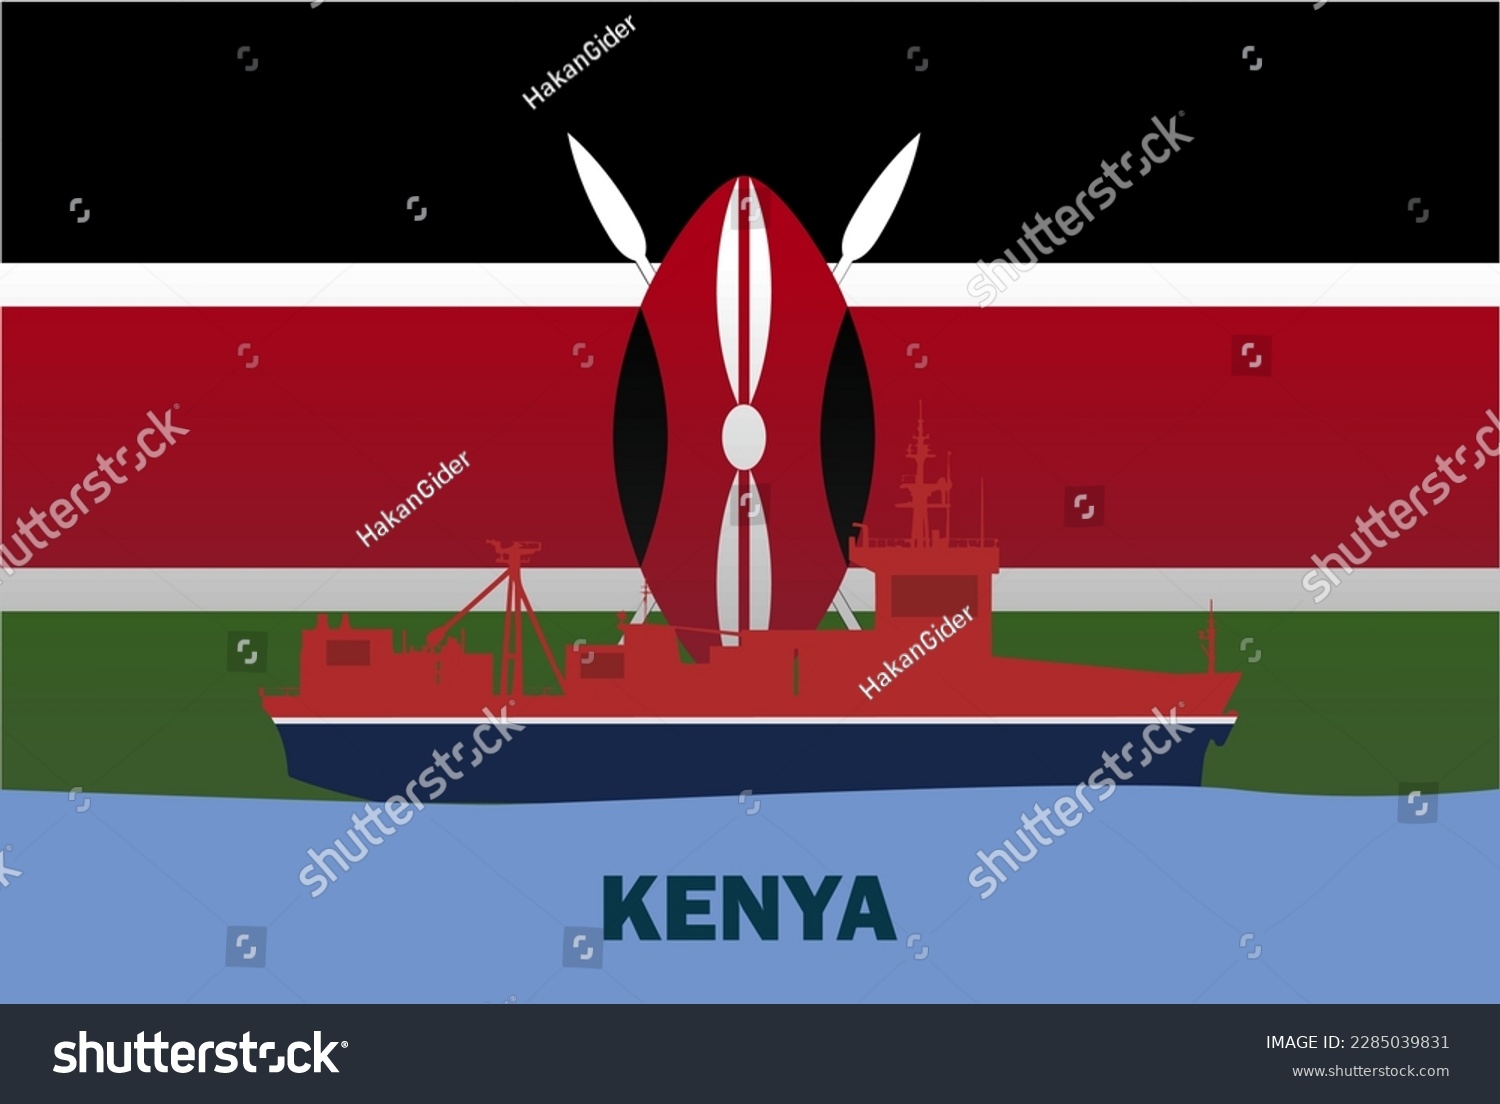 Sea Transport Kenya Flag Bulk Carrier Stock Vector Royalty Free 2285039831 Shutterstock